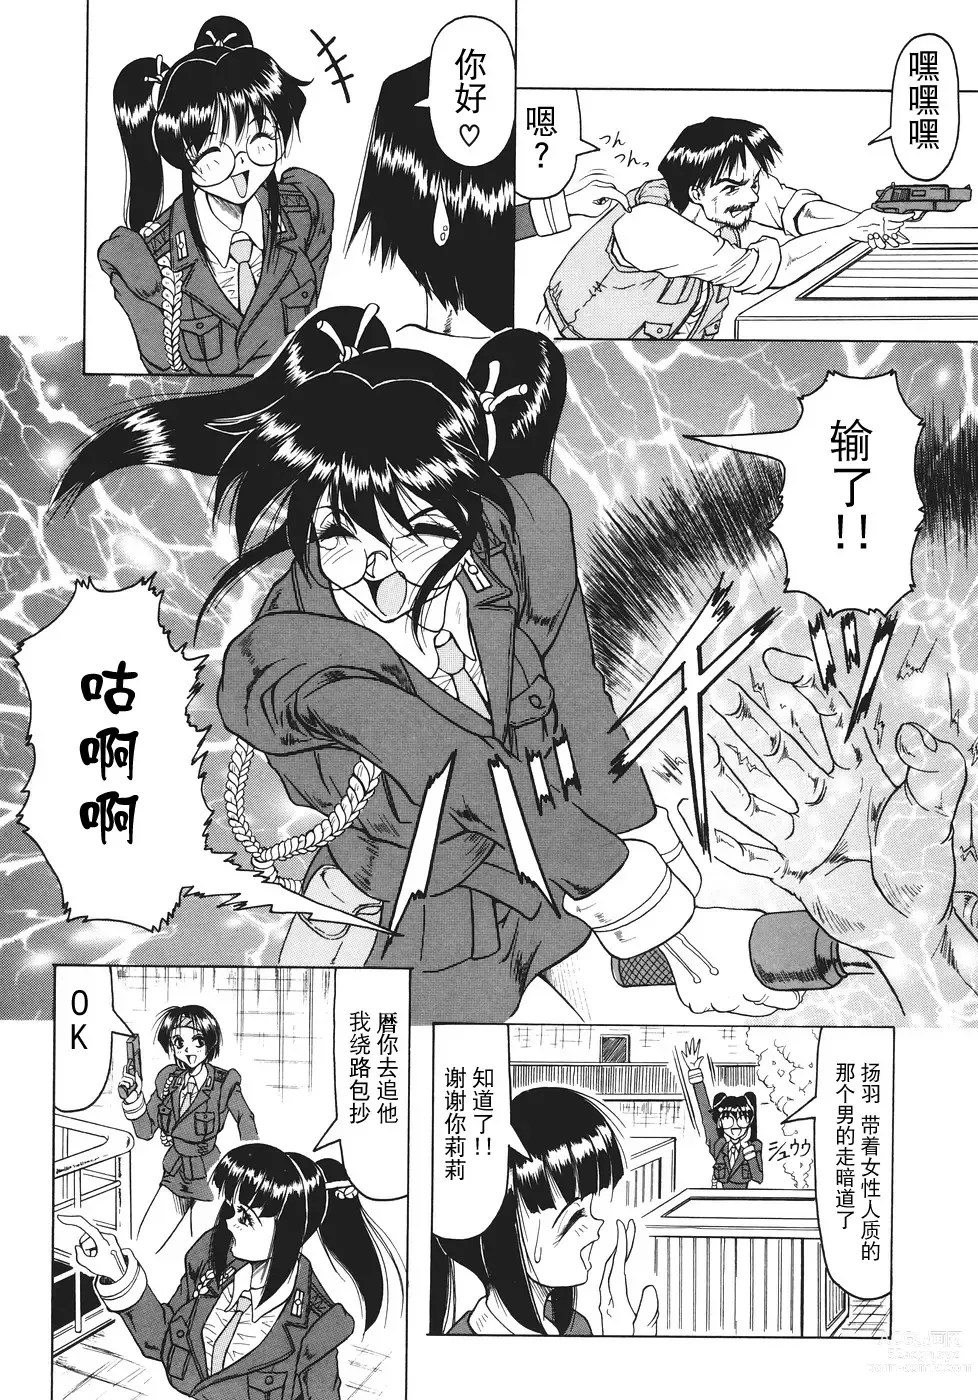 Page 9 of manga Kamyla